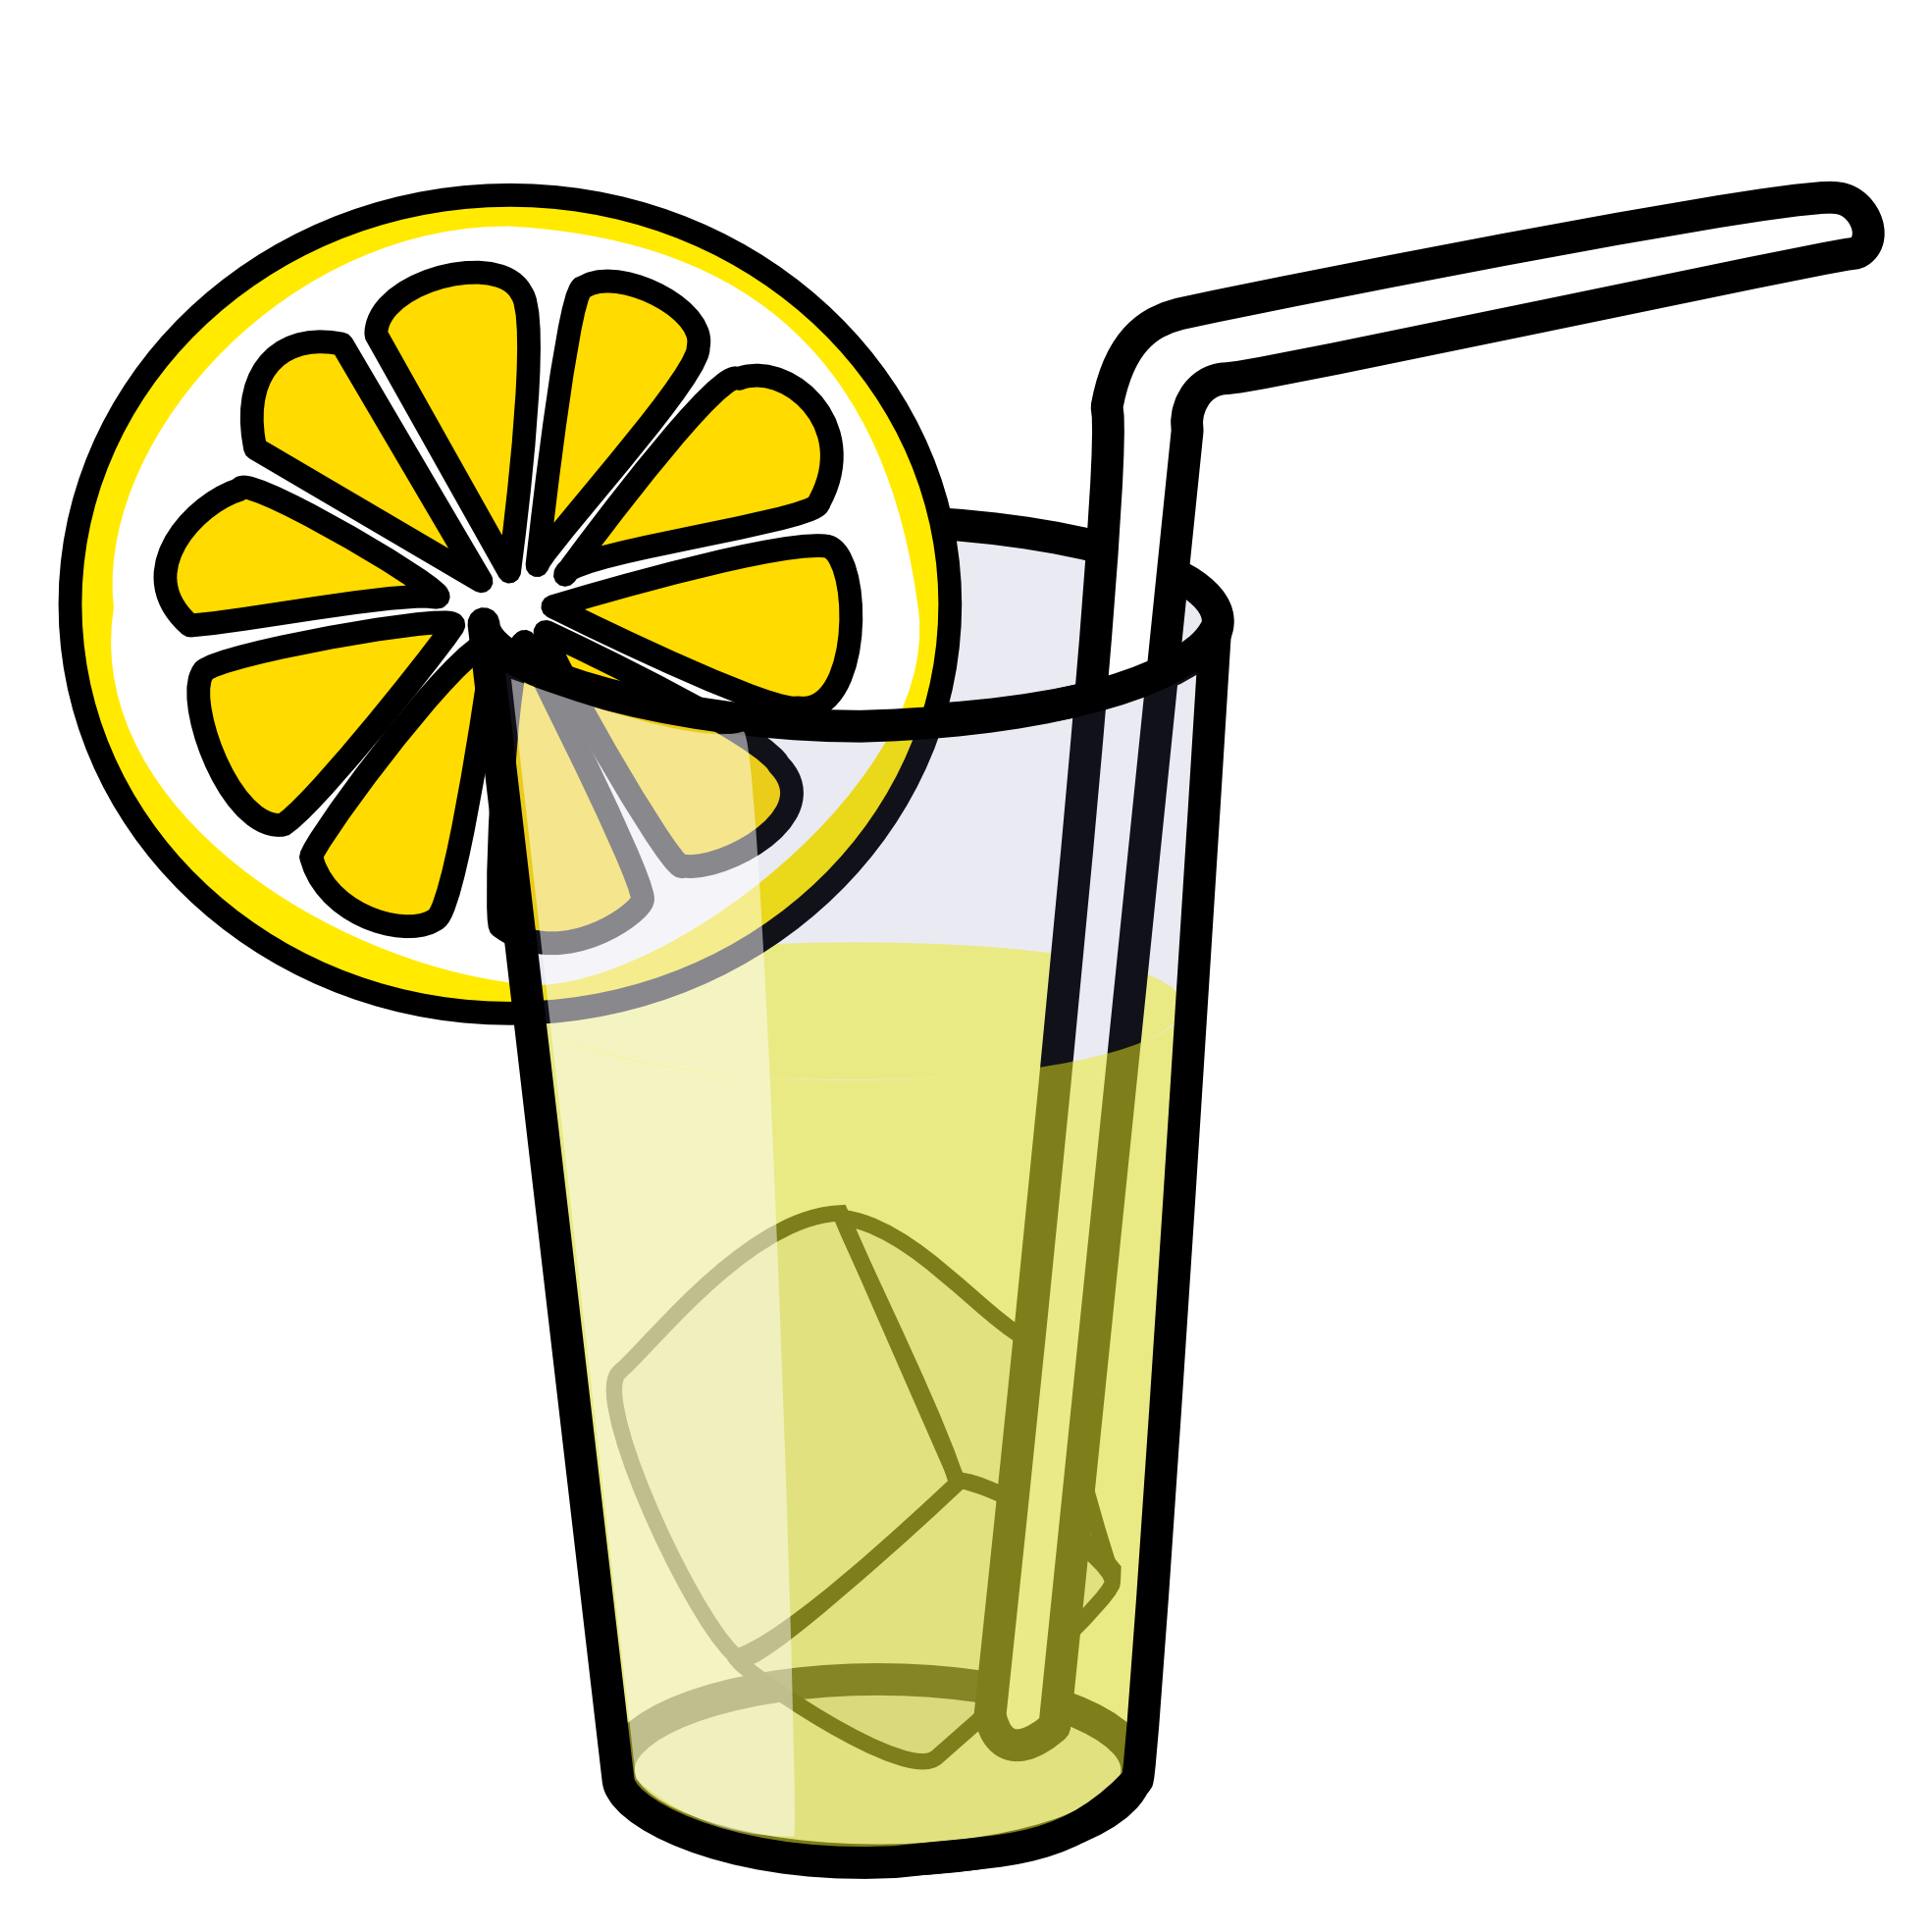 Lemonade clipart cute cartoon, Lemonade cute cartoon